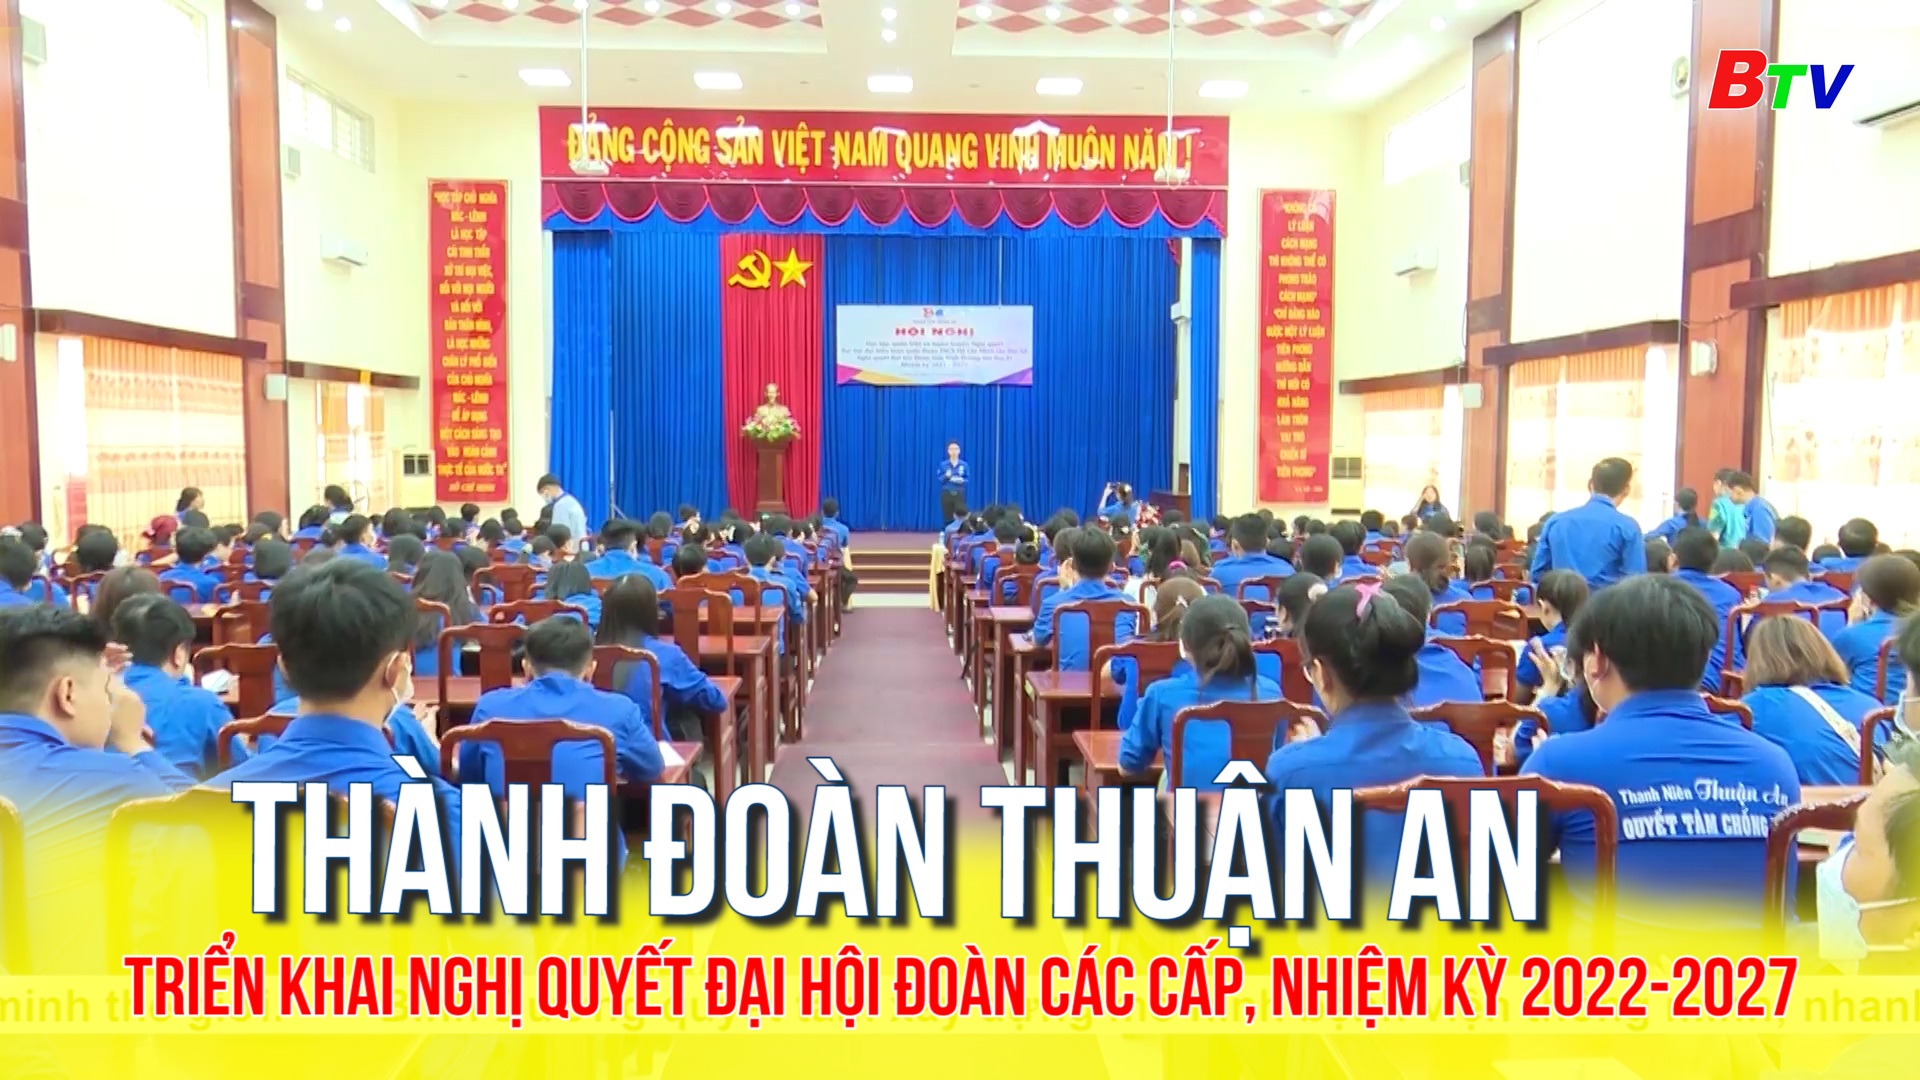 Thành Đoàn Thuận An triển khai nghị quyết Đại hội Đoàn các cấp, nhiệm kỳ 2022-2027